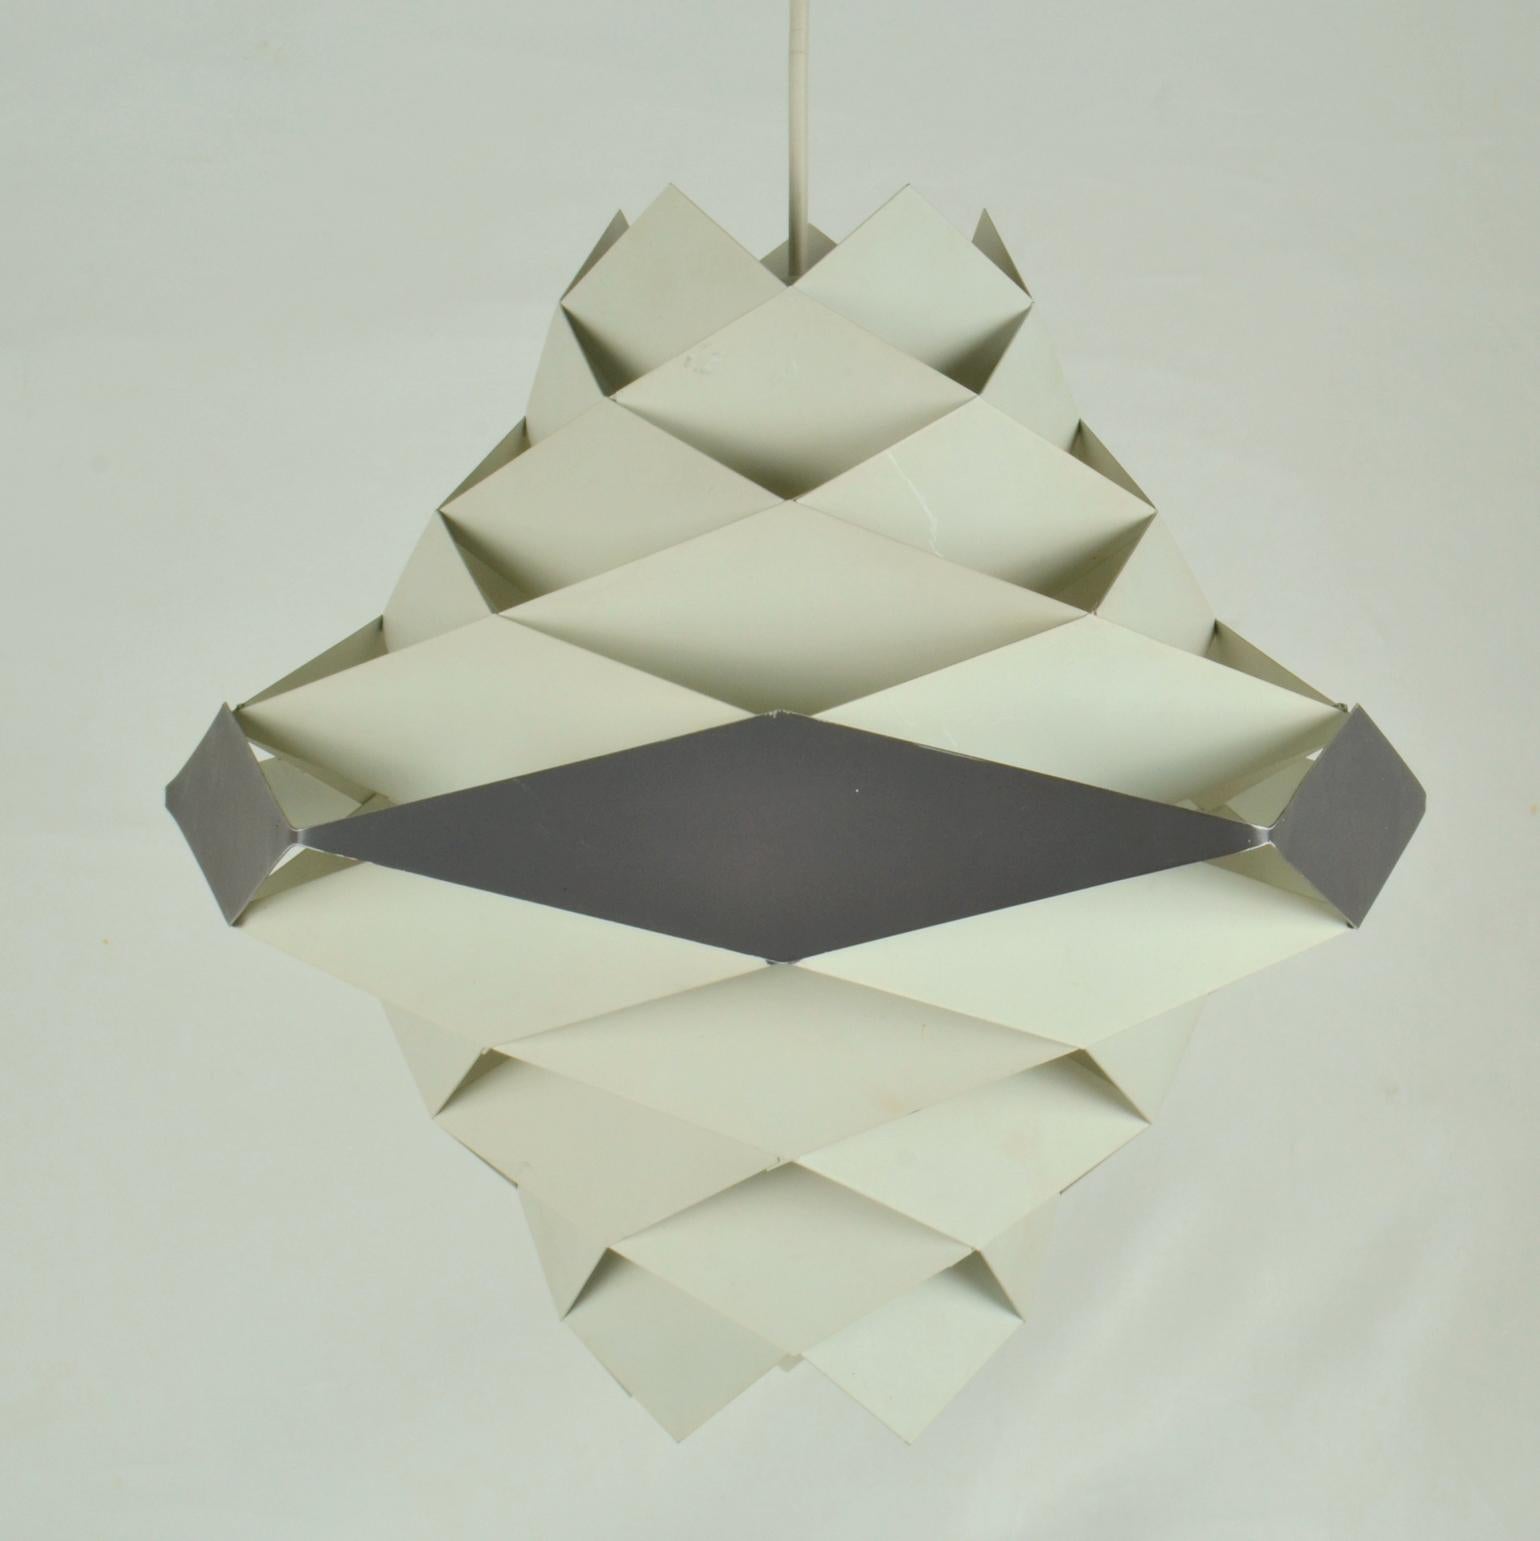 Die Leuchte Symfoni aus weiß und dunkelgrau-schwarz lackierten Metalldiamanten, die zu einem Lampenschirm im Origami-Stil montiert sind, wurde von Preben Dal (1929-1980) entworfen und von Hans Følsgaard Elektro hergestellt.
Symfoni-Lampen wurden in